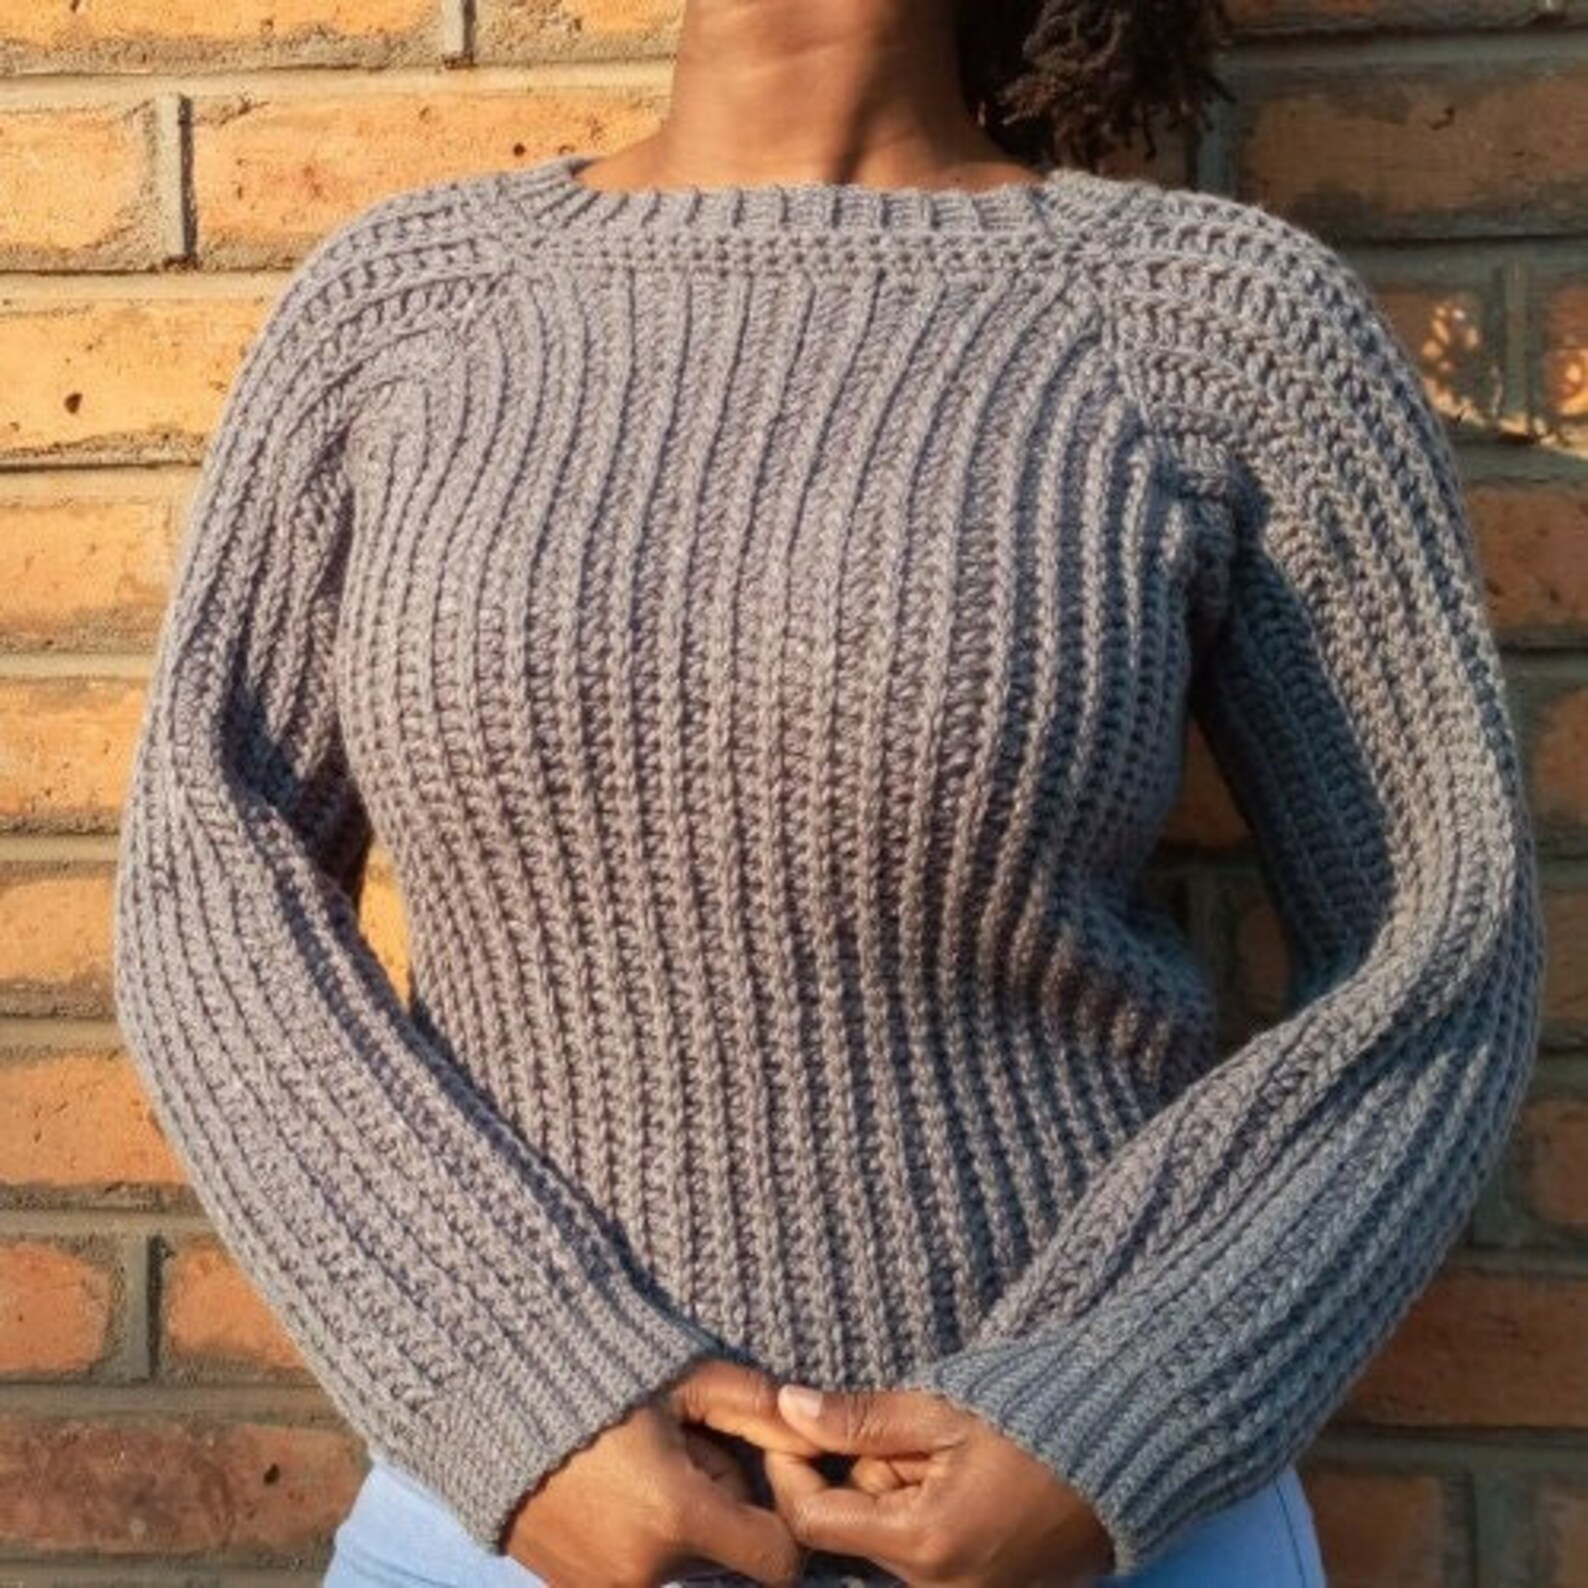 crochet sweater free pattern